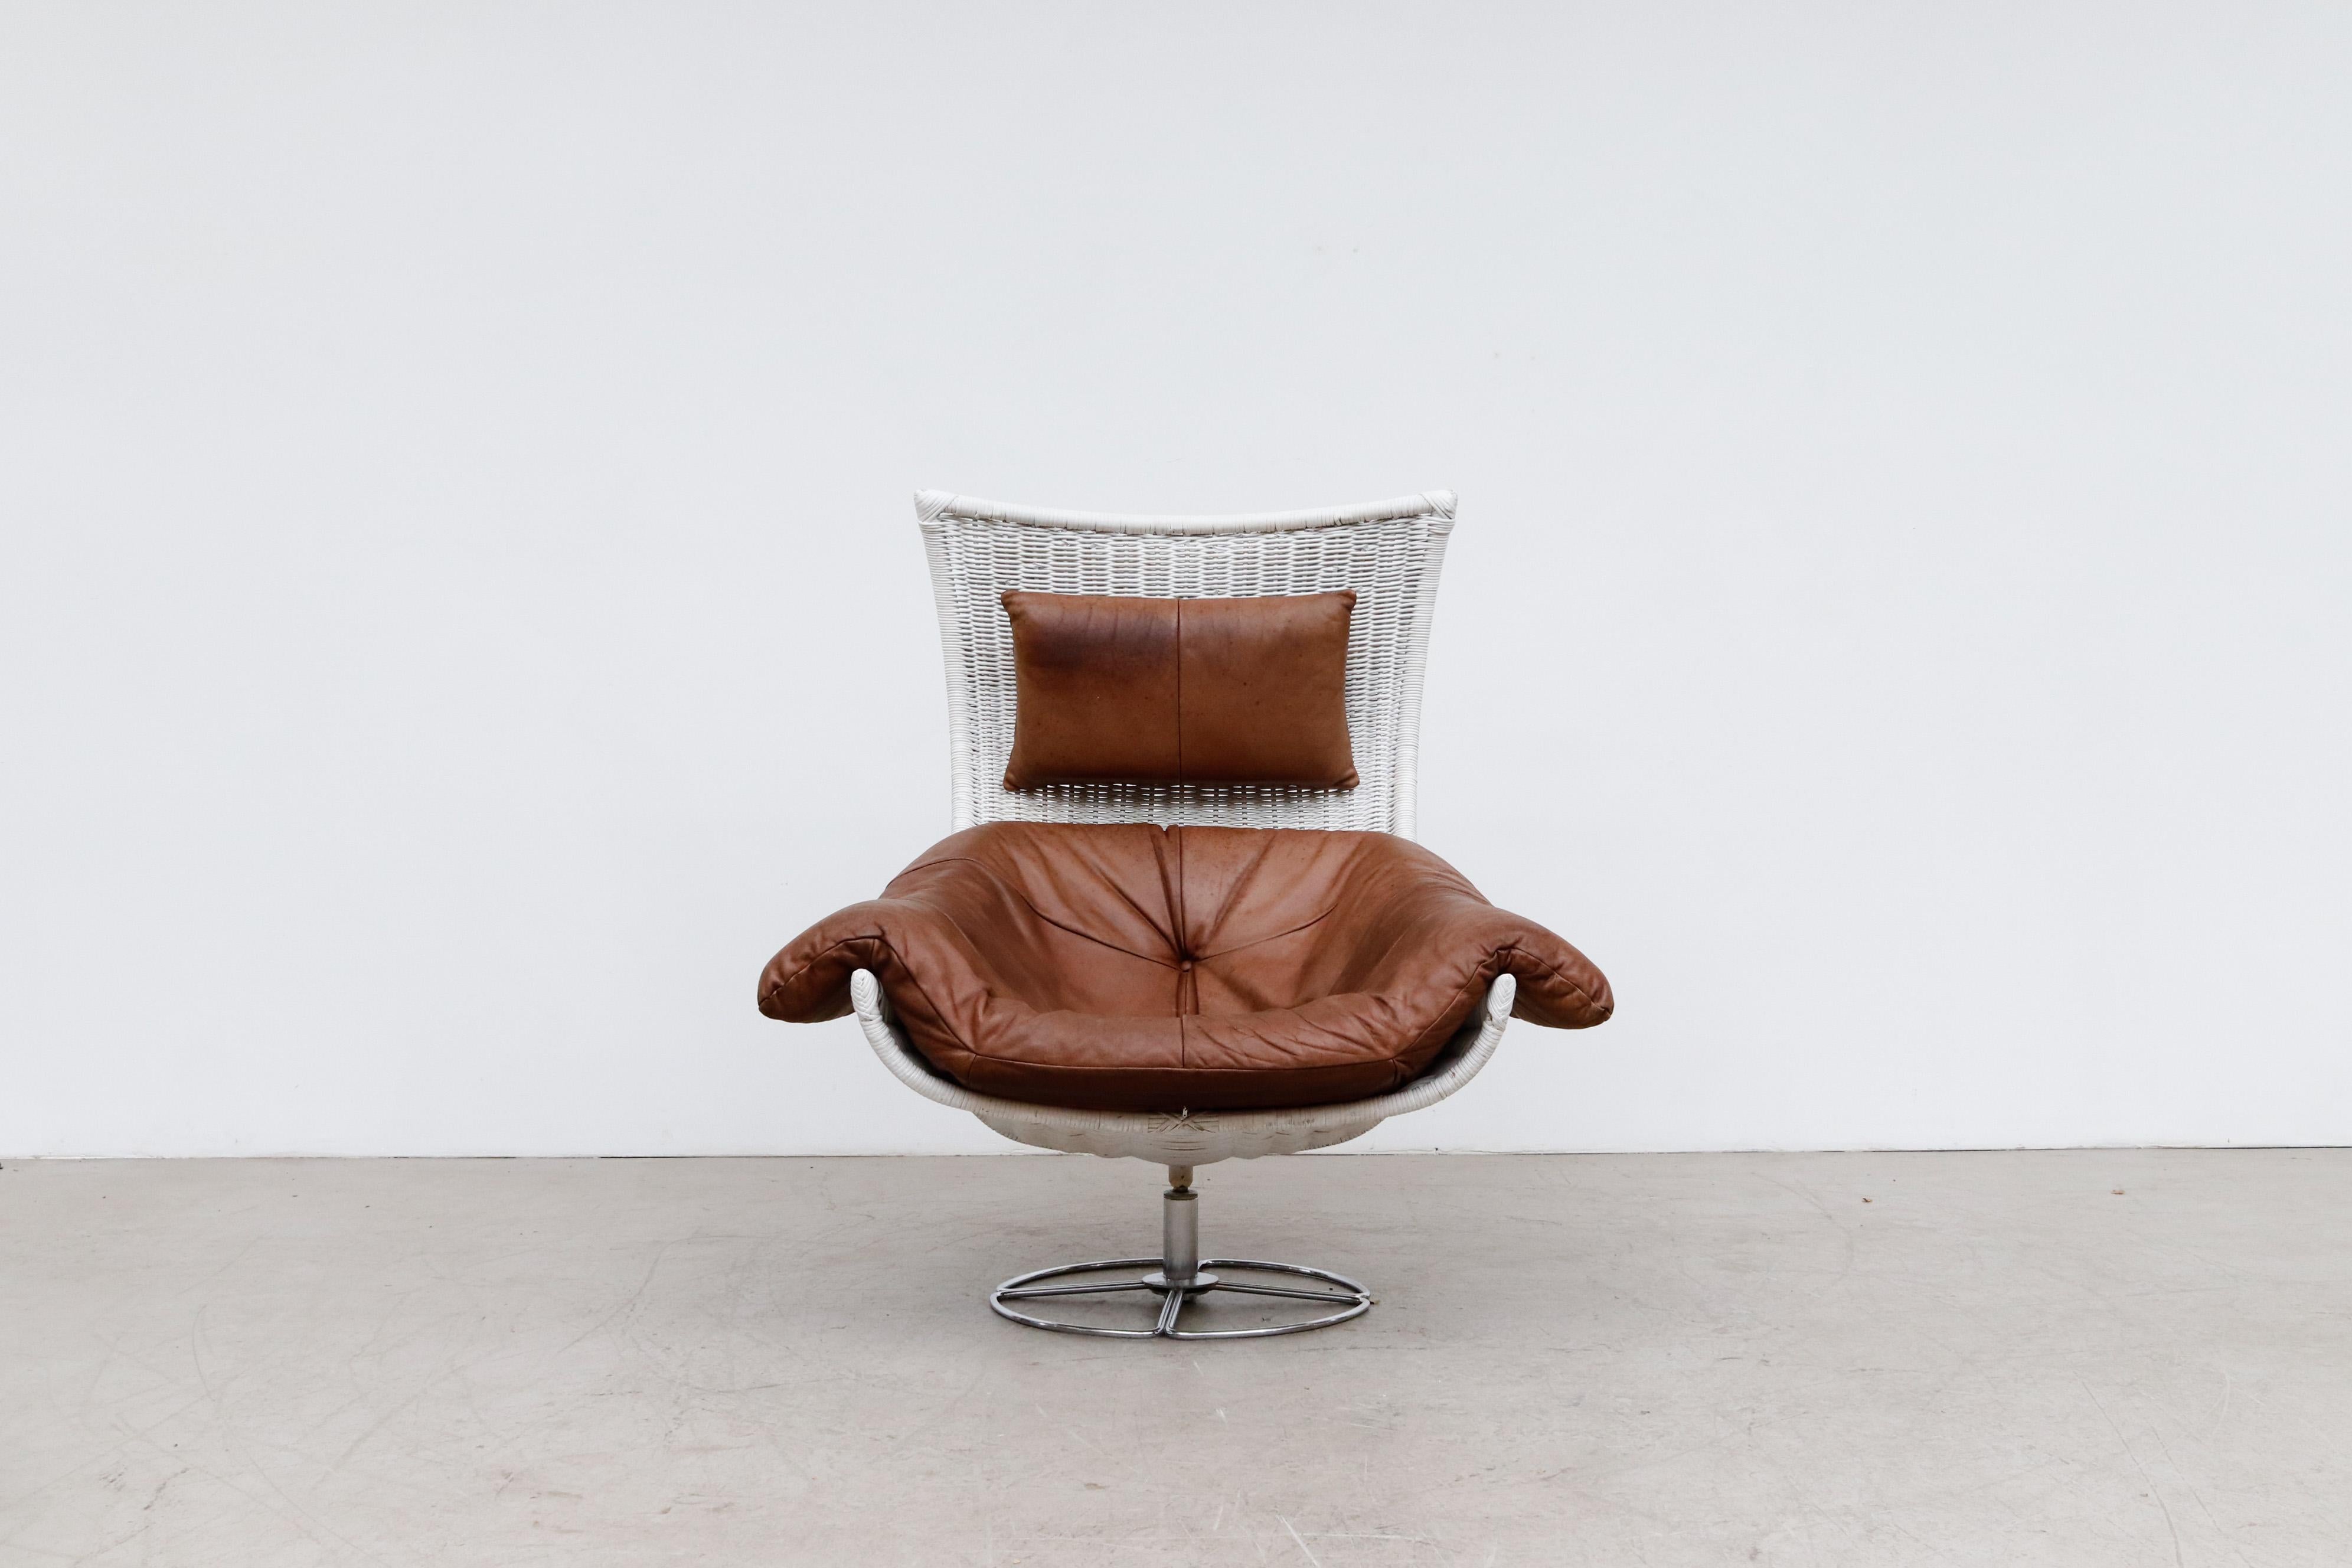 Der von Gerard van den Berg entworfene, drehbare Loungesessel aus der Mitte des Jahrhunderts für den renommierten niederländischen Möbelhersteller Montis. Van den Berg gilt als einer der innovativsten und produktivsten Designer Hollands, dessen